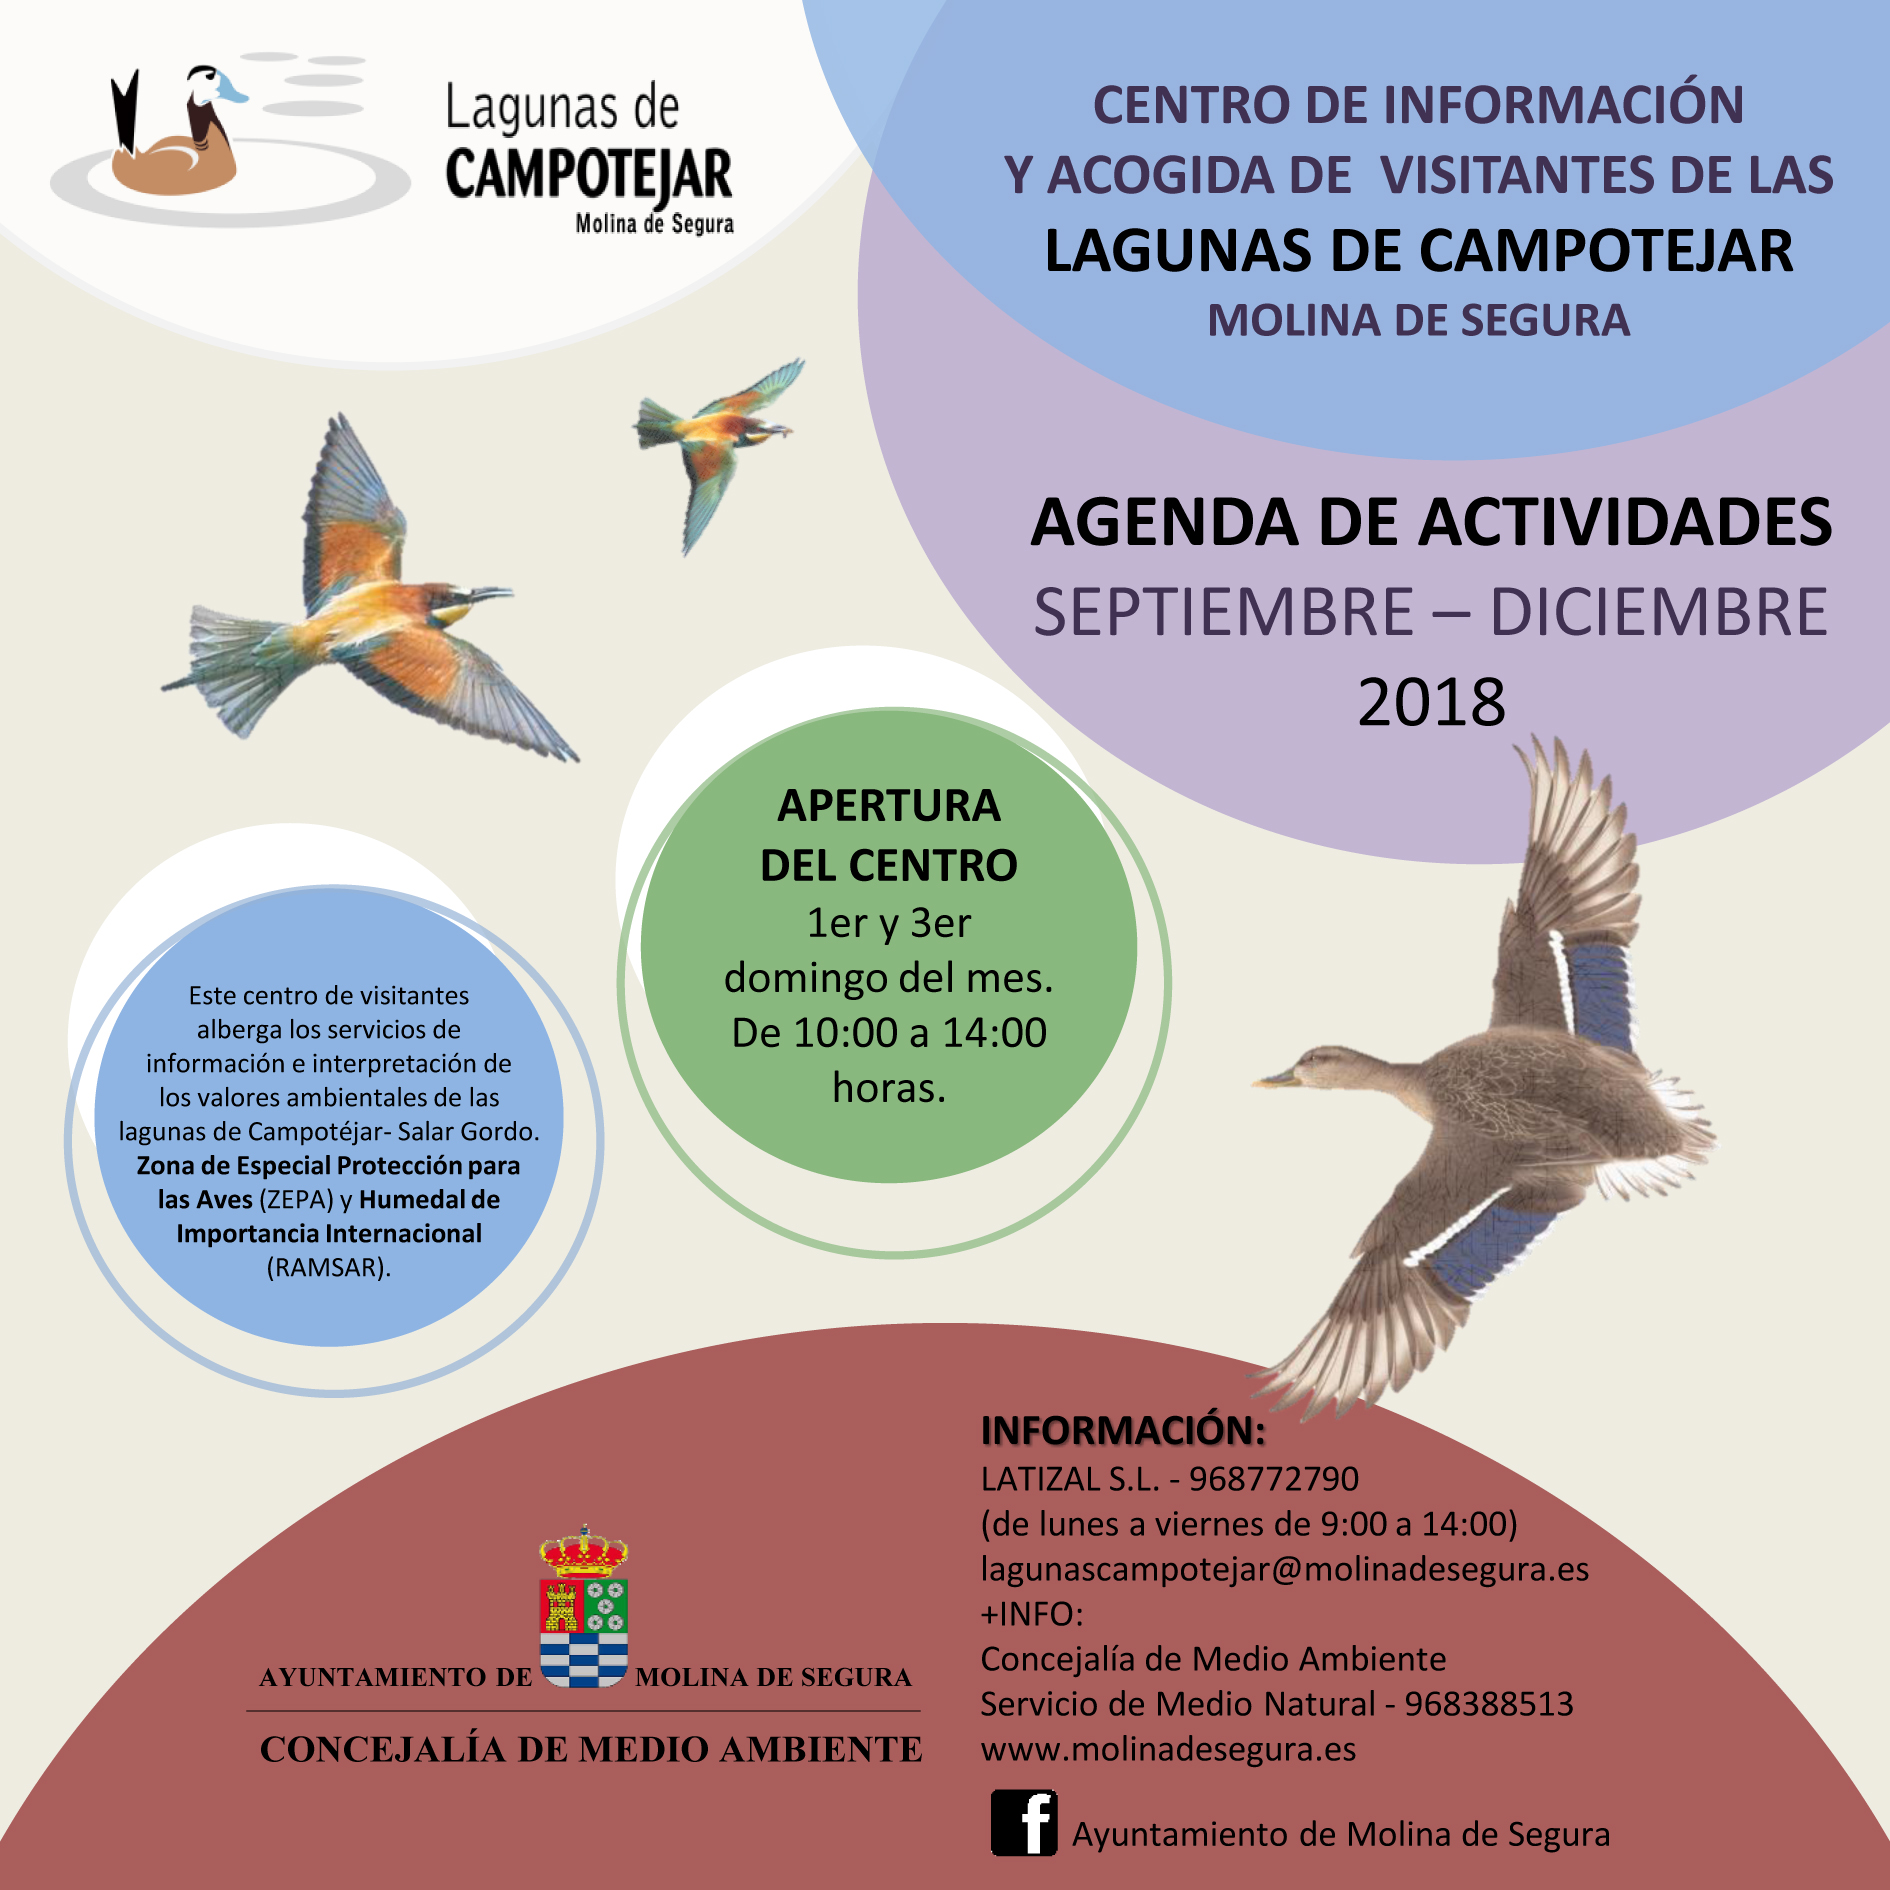 Datos de contacto de las Lagunas de Campotéjar, con el Ayto. de Molina de Segura